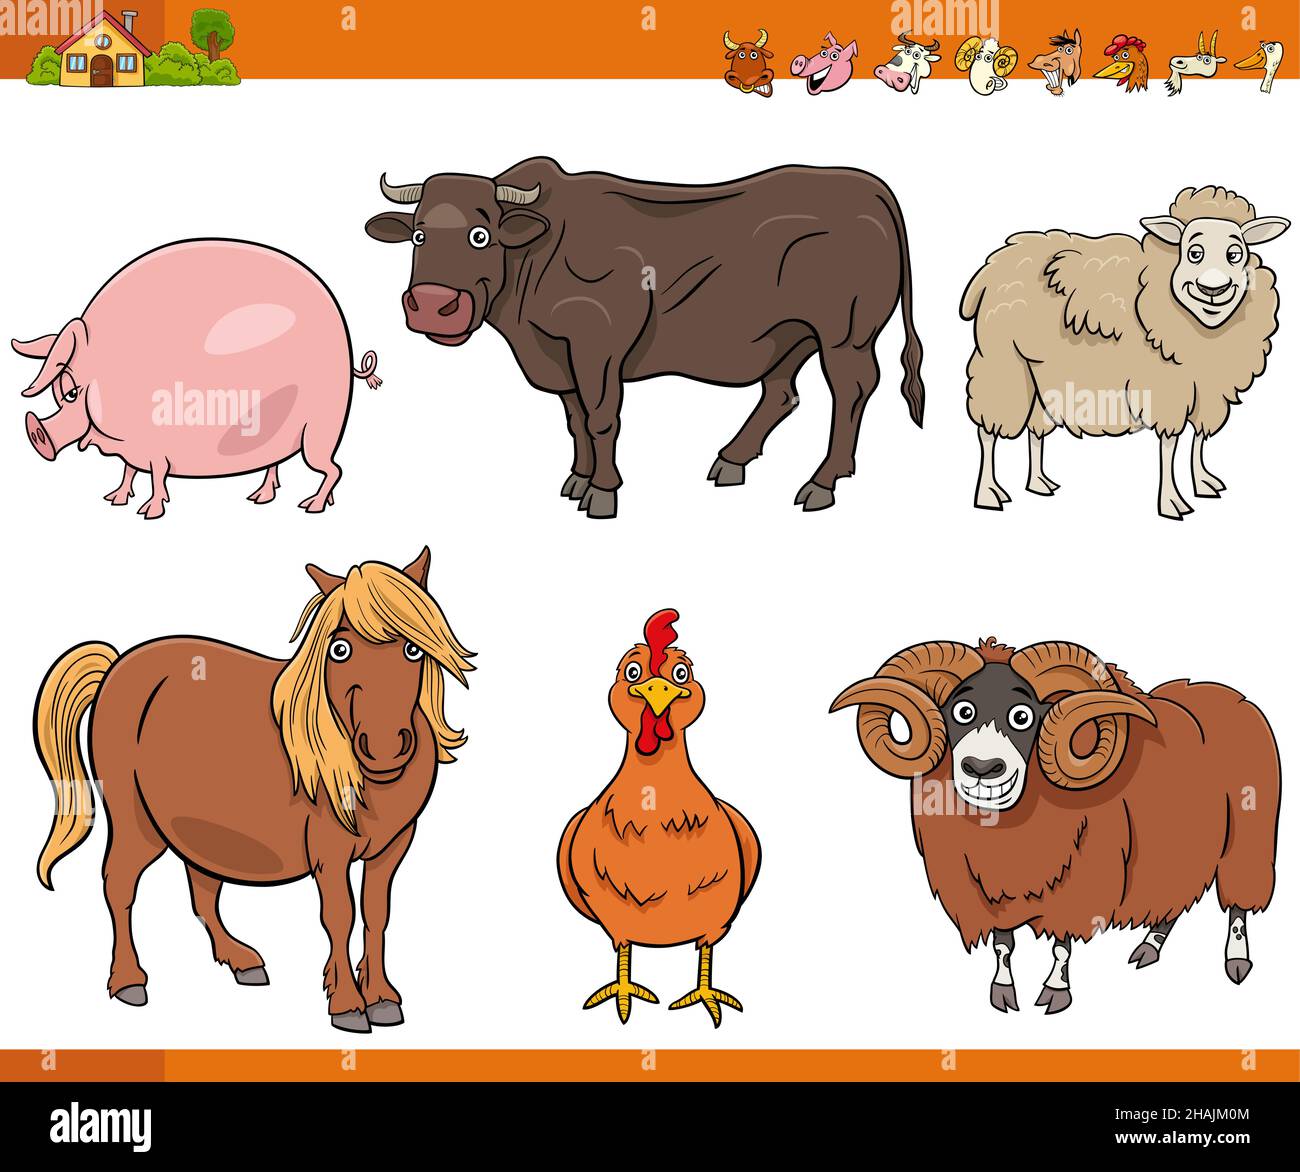 Illustrazione cartoon di divertenti animali da fattoria set di personaggi comici Illustrazione Vettoriale